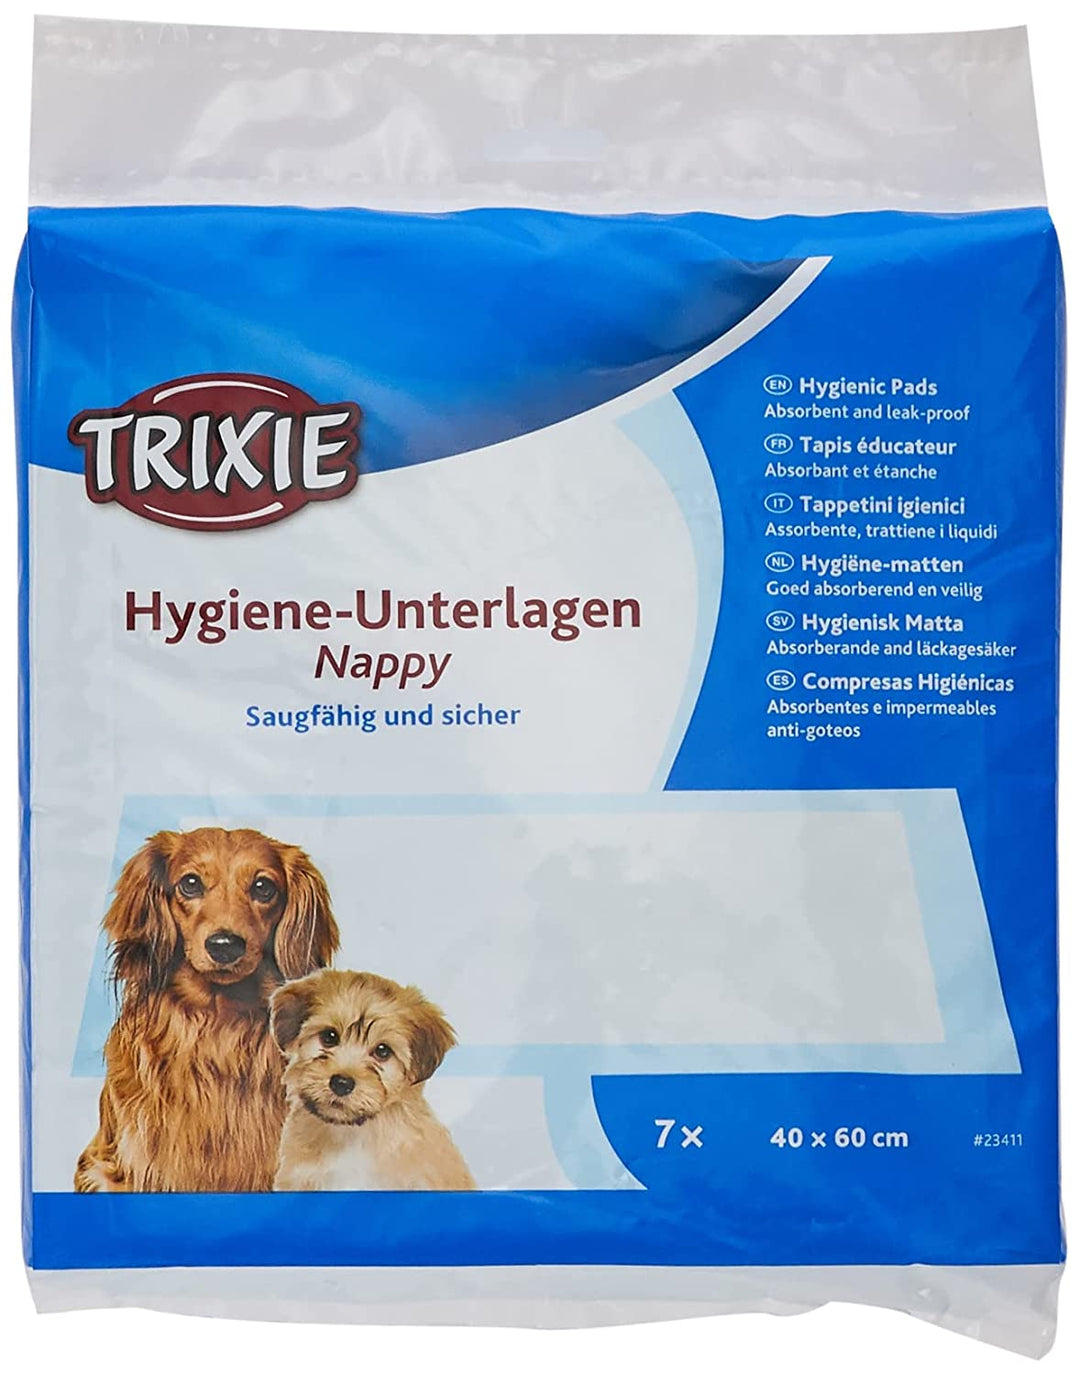 Trixie Nappy Hygiene Pads with Lavender Scent, 7 pcs - 40 x 60 cm